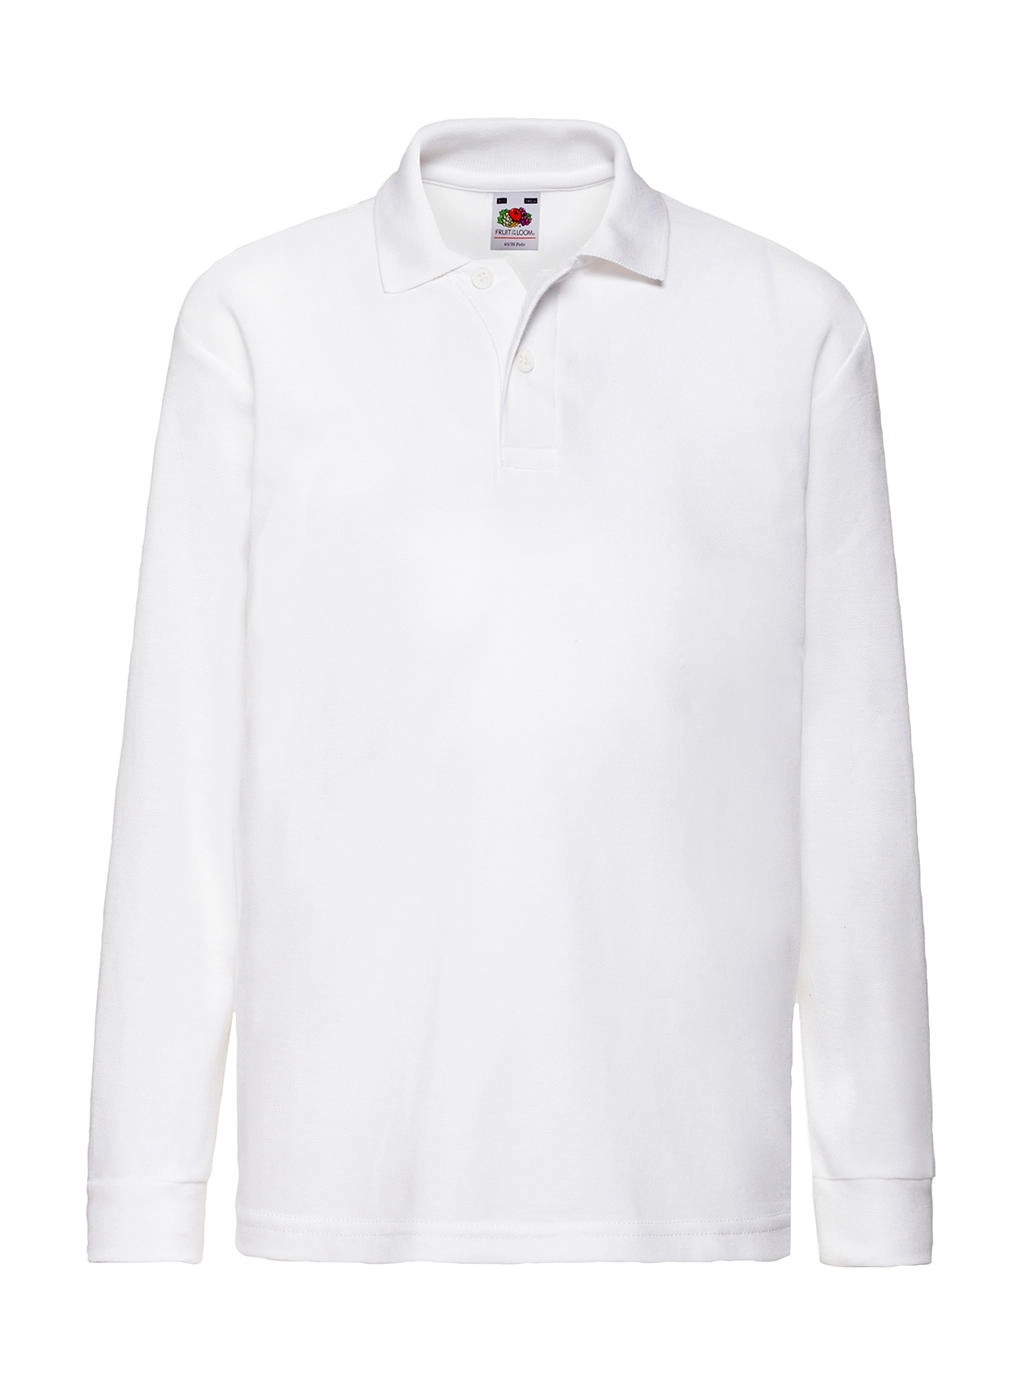 Kids` 65/35 Long Sleeve Polo zum Besticken und Bedrucken in der Farbe White mit Ihren Logo, Schriftzug oder Motiv.